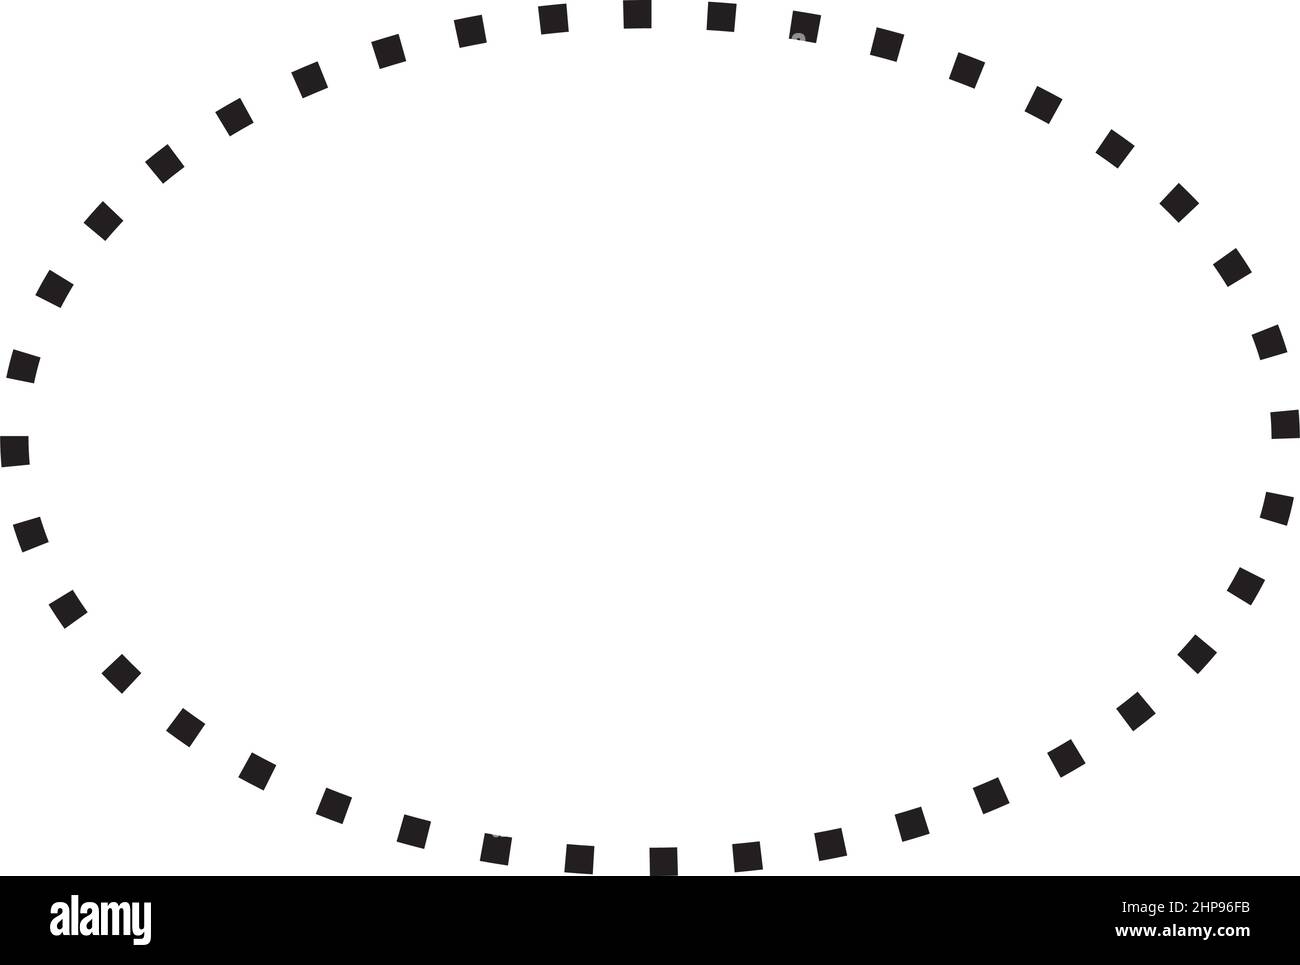 Ellipse Symbol gestrichelte Form Vektor-Symbol für kreatives Grafikdesign ui-Element in einer Piktogramm-Illustration Stock Vektor